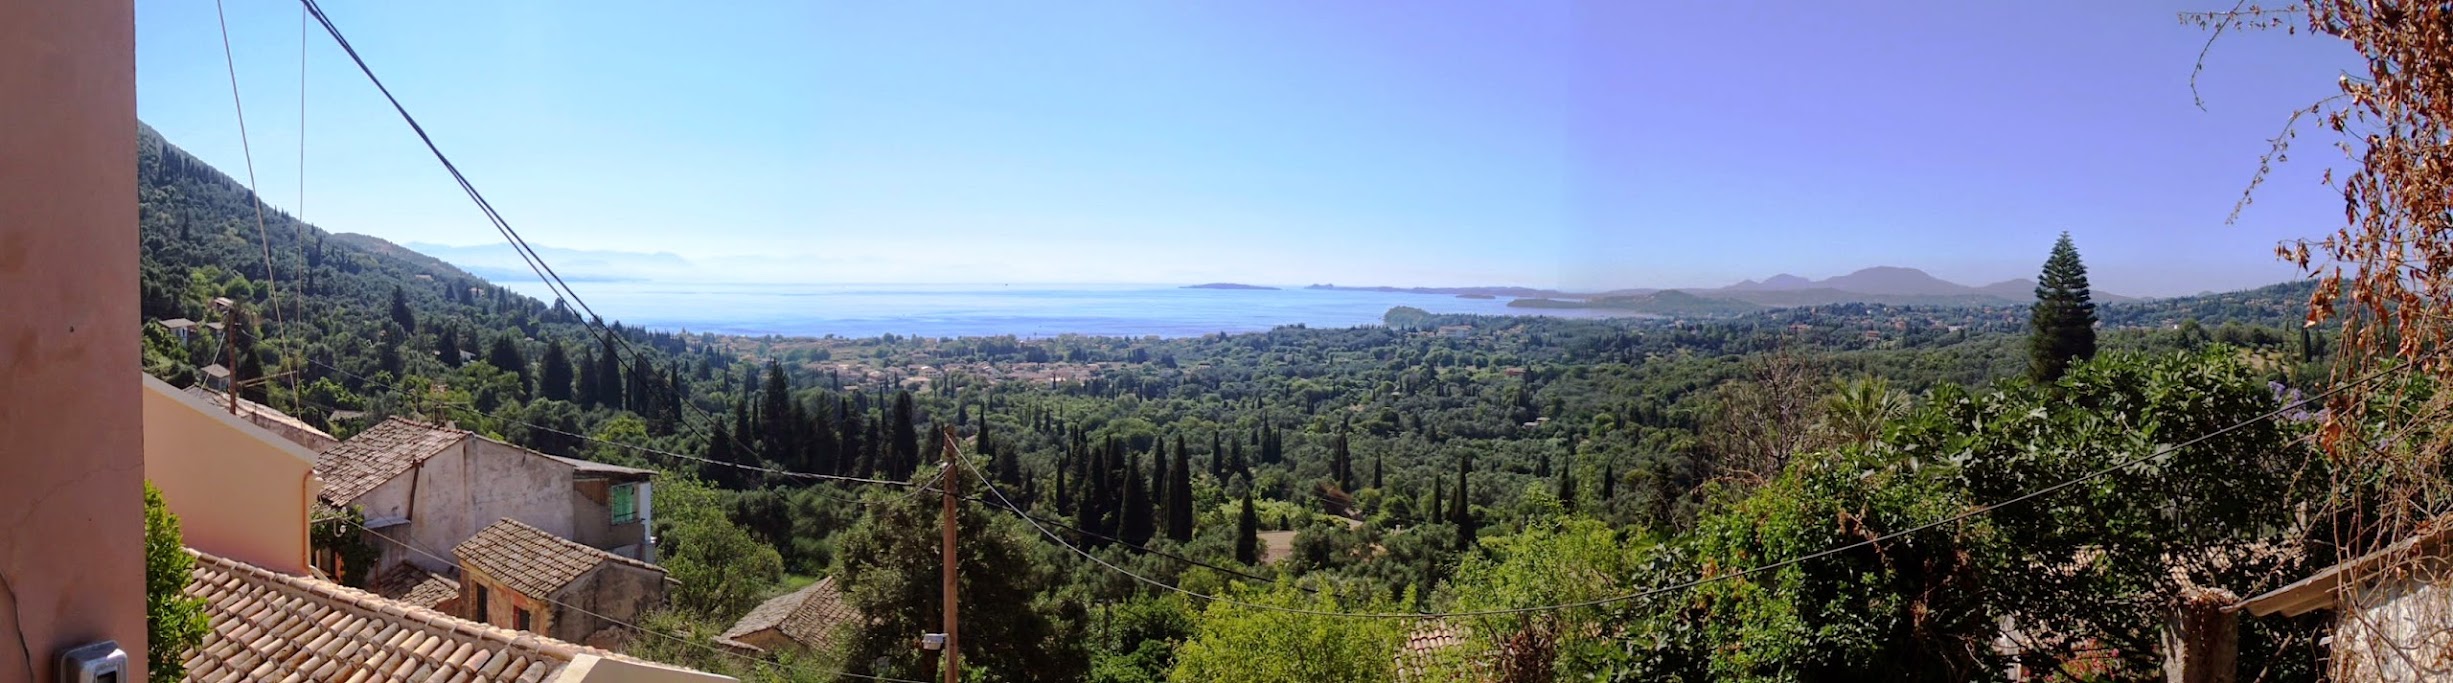 Panorama+Corfu+Agios+Markos.jpg